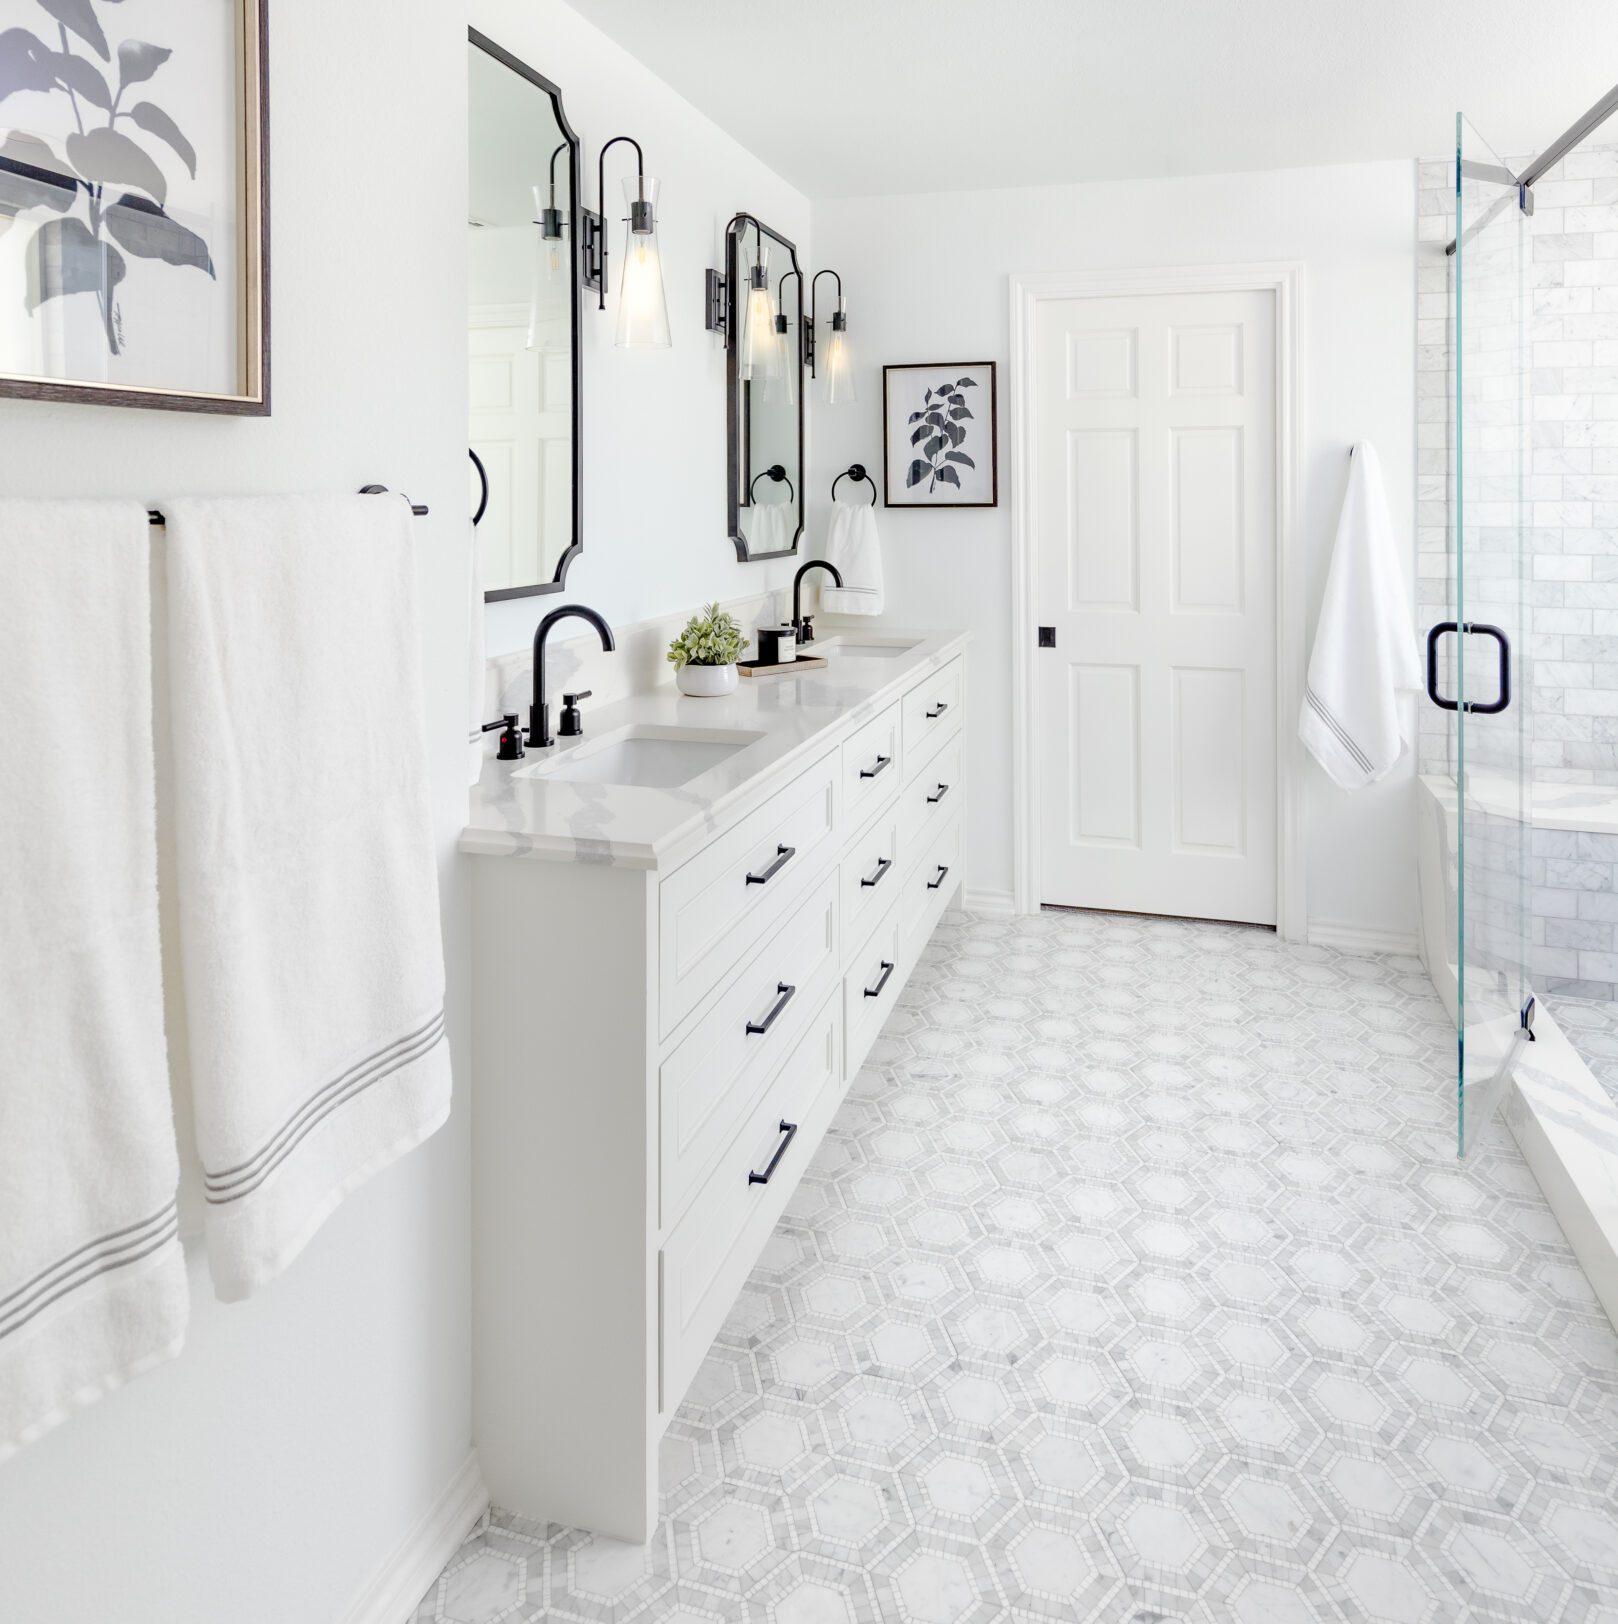 westlake austin luxury bathroom remodel custom white vanity black accents